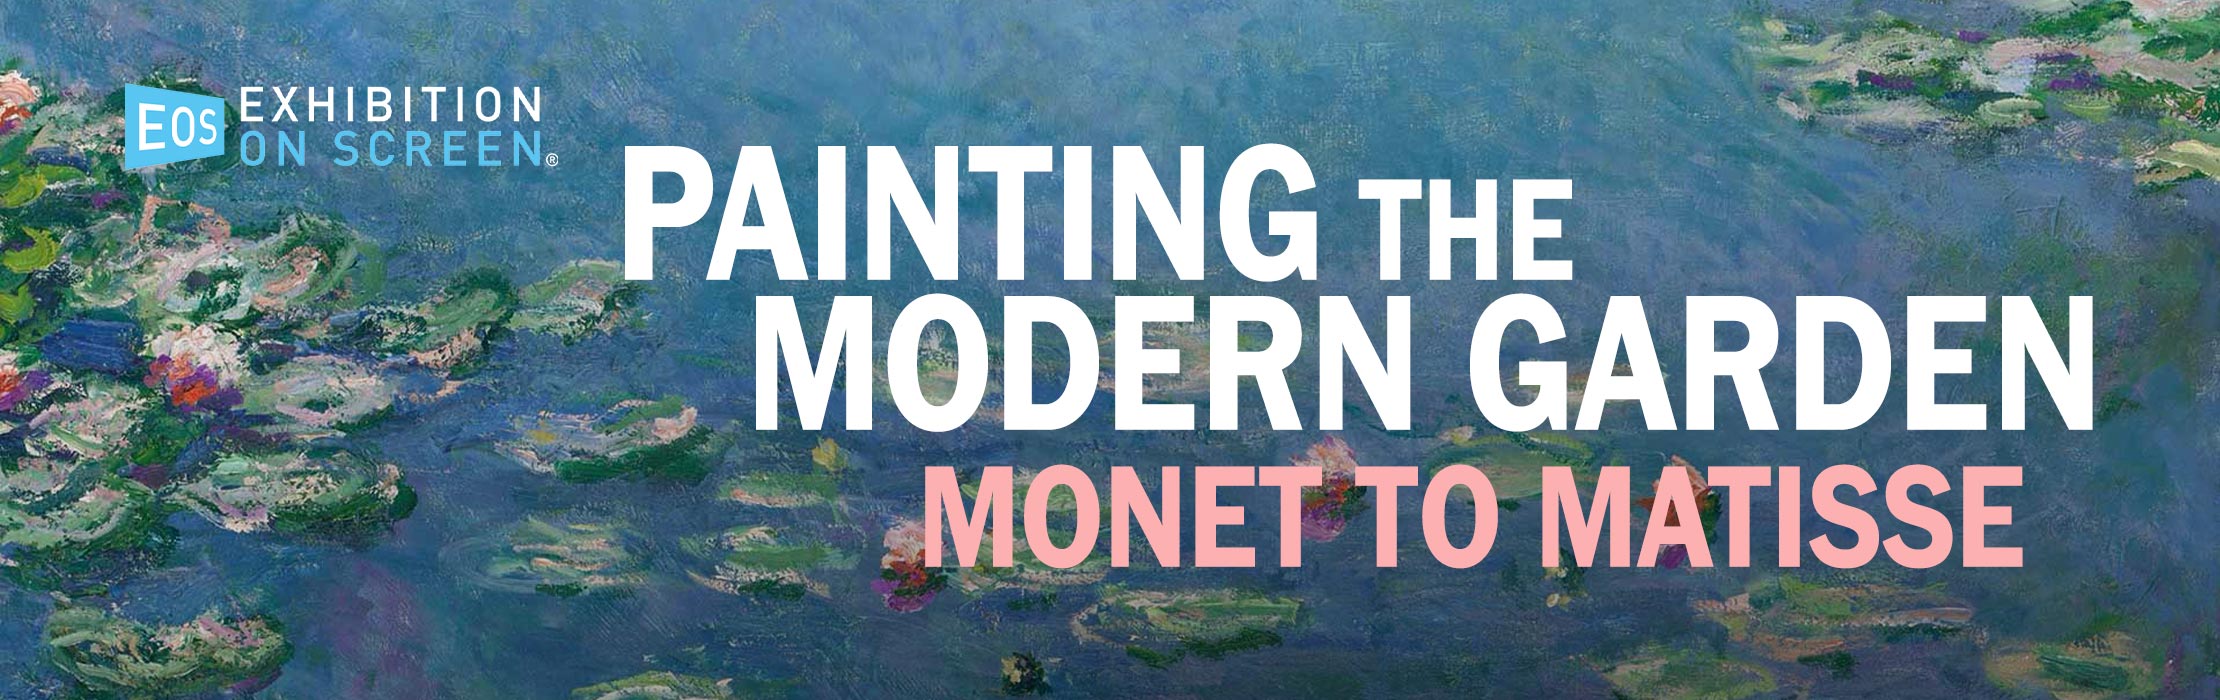 /film/EOS-Painting-The-Modern-Garden-Monet-To-Matisse